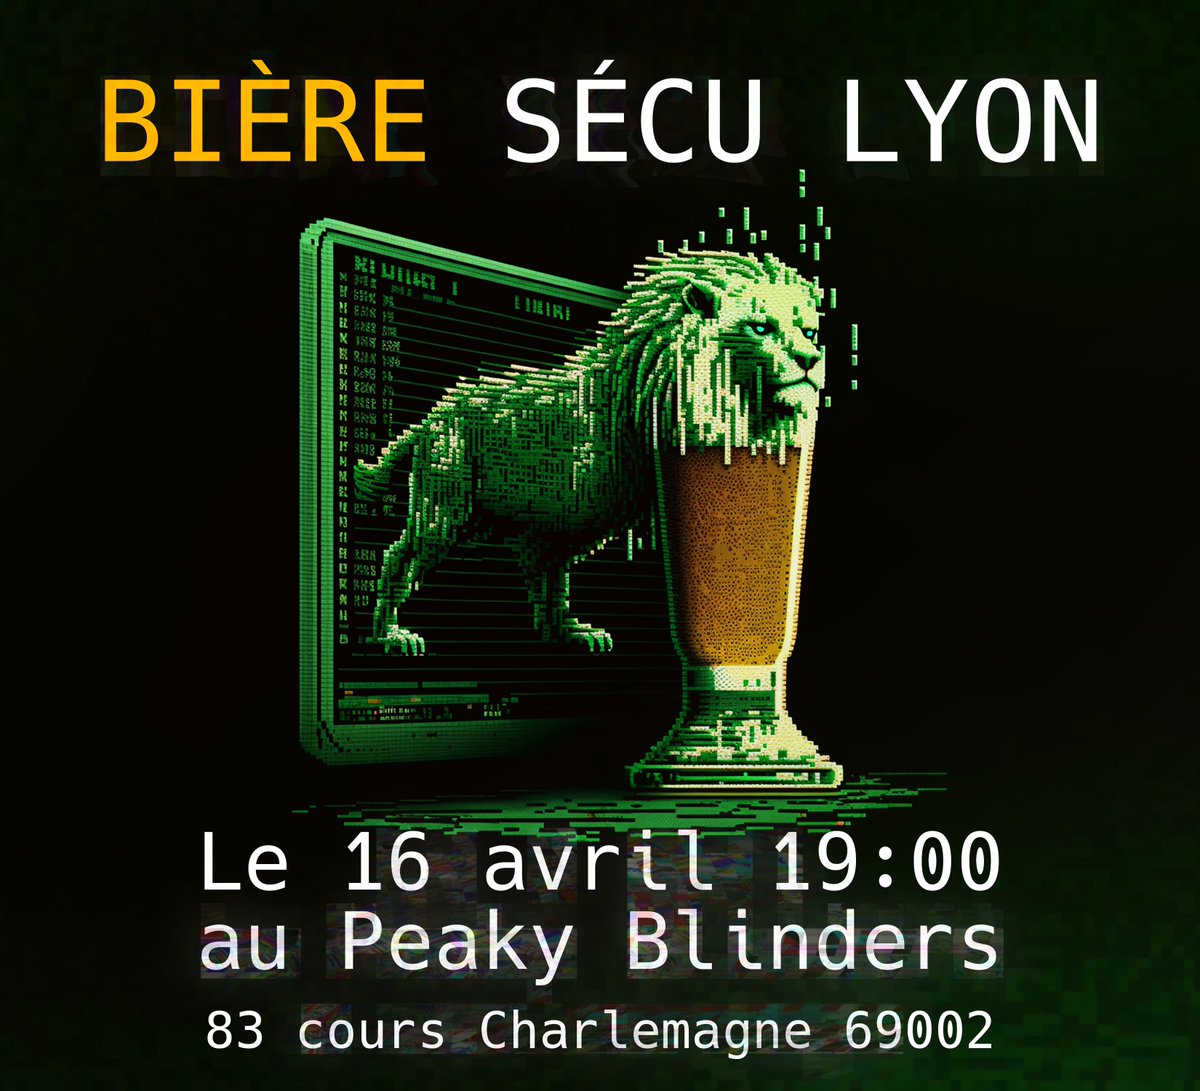 🍻 Le prochain Bière&Sécu Lyon aura lieu mardi 16 avril à 19:00 au Peaky Blinders ! Au programme : - 'Jia Tan, sa vie, son œuvre et la backdoor xz' - @0xmitsurugi - 'Falco + Kube = Max(Count(RCE))' - @TheLaluka - 'Les vrais hackers ne laissent pas de traces' - @contact_out